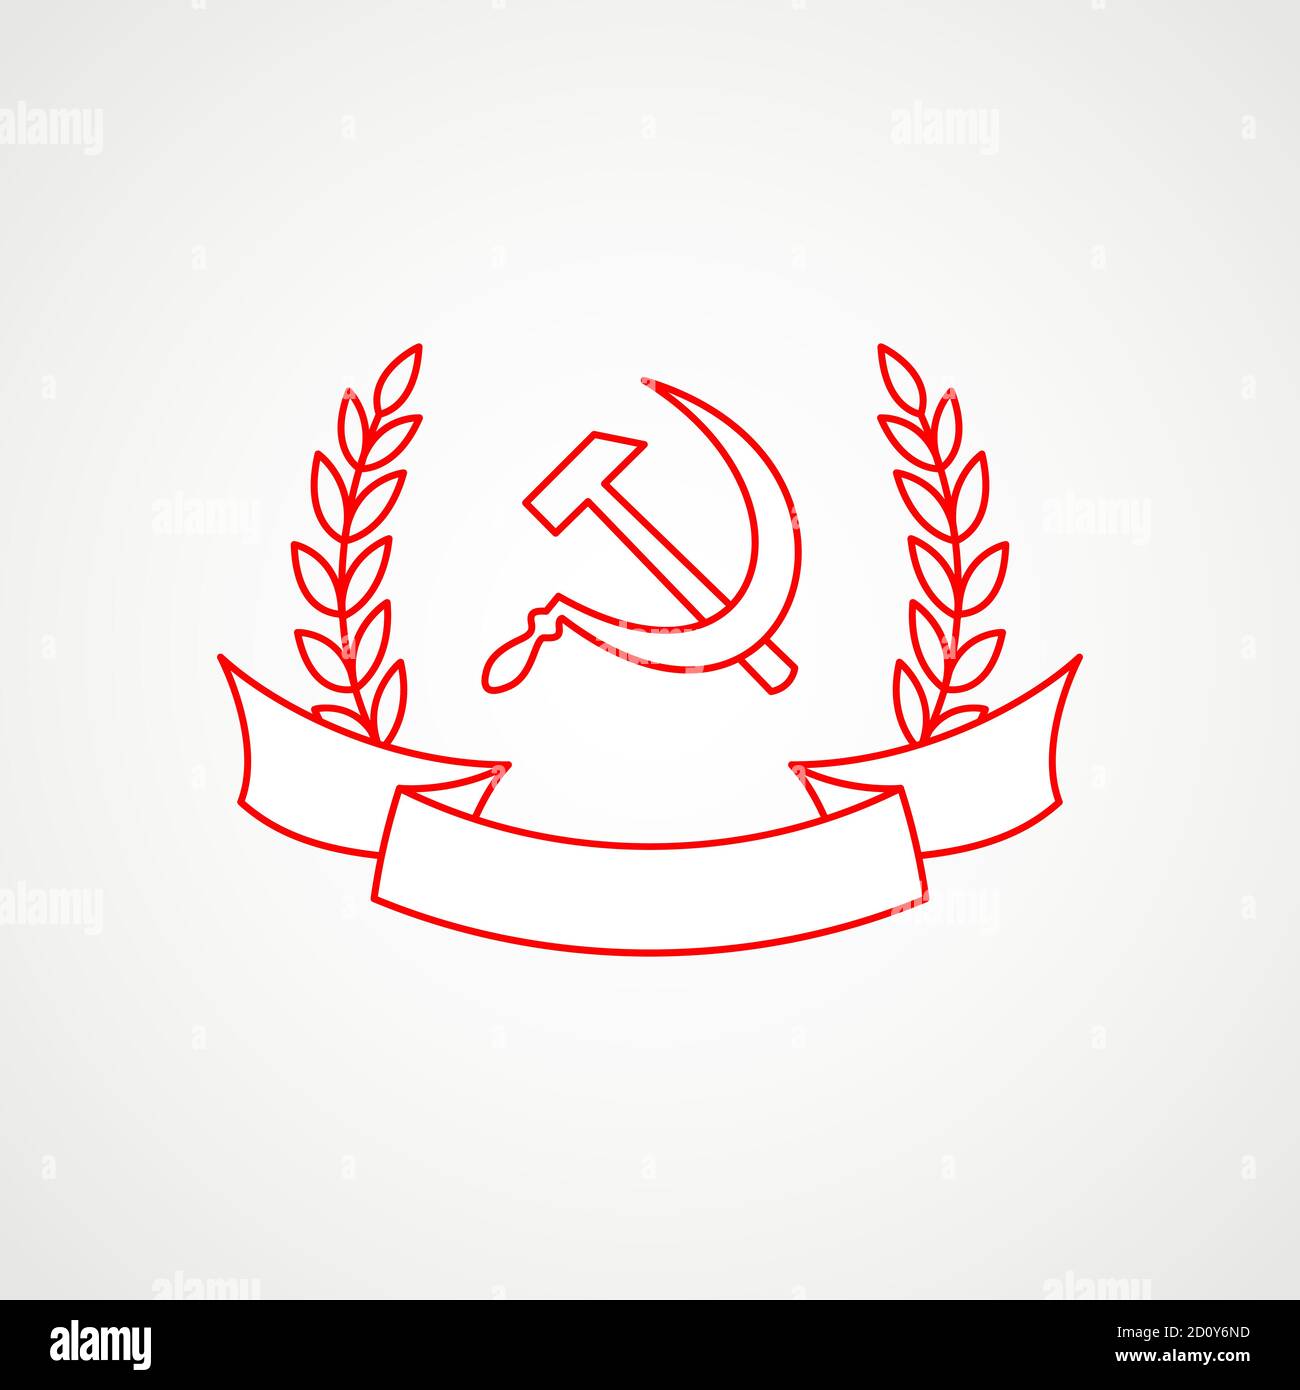 Icône linéaire du communisme. Marteau, faucille et couronne avec bande. Emblème soviétique rouge. Armoiries minimalistes de l'URSS. Vecteur Illustration de Vecteur